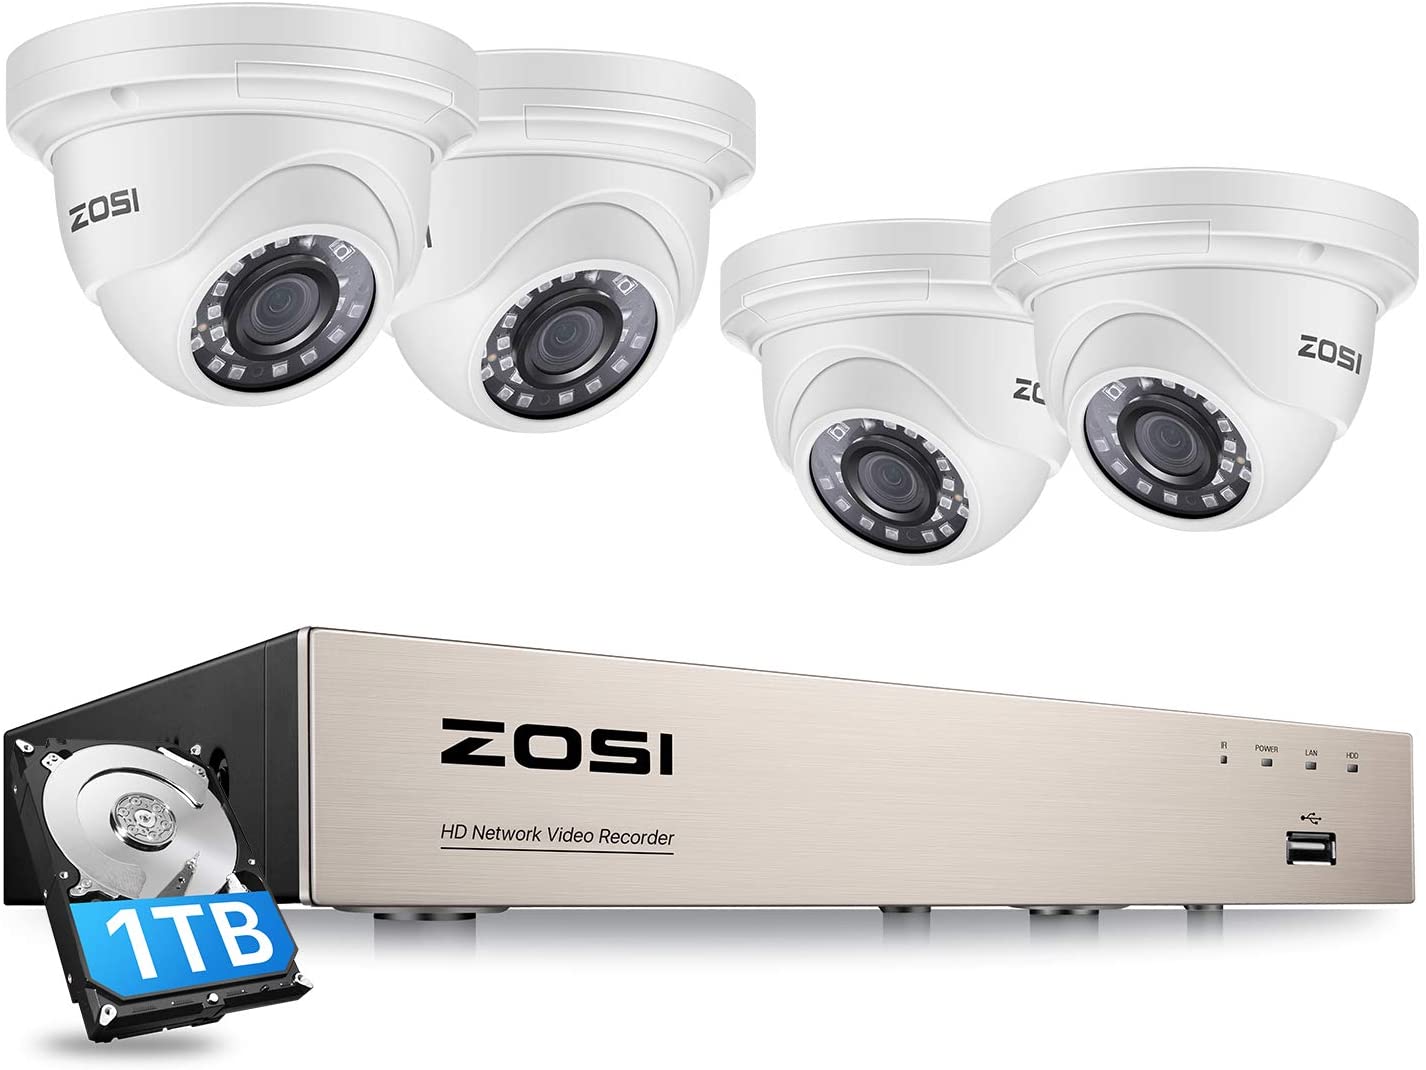 ZOSI FHD 1080P Überwachungskamera Set 8CH DVR 2 Outdoor Dome Kamera mit 1TB HDD